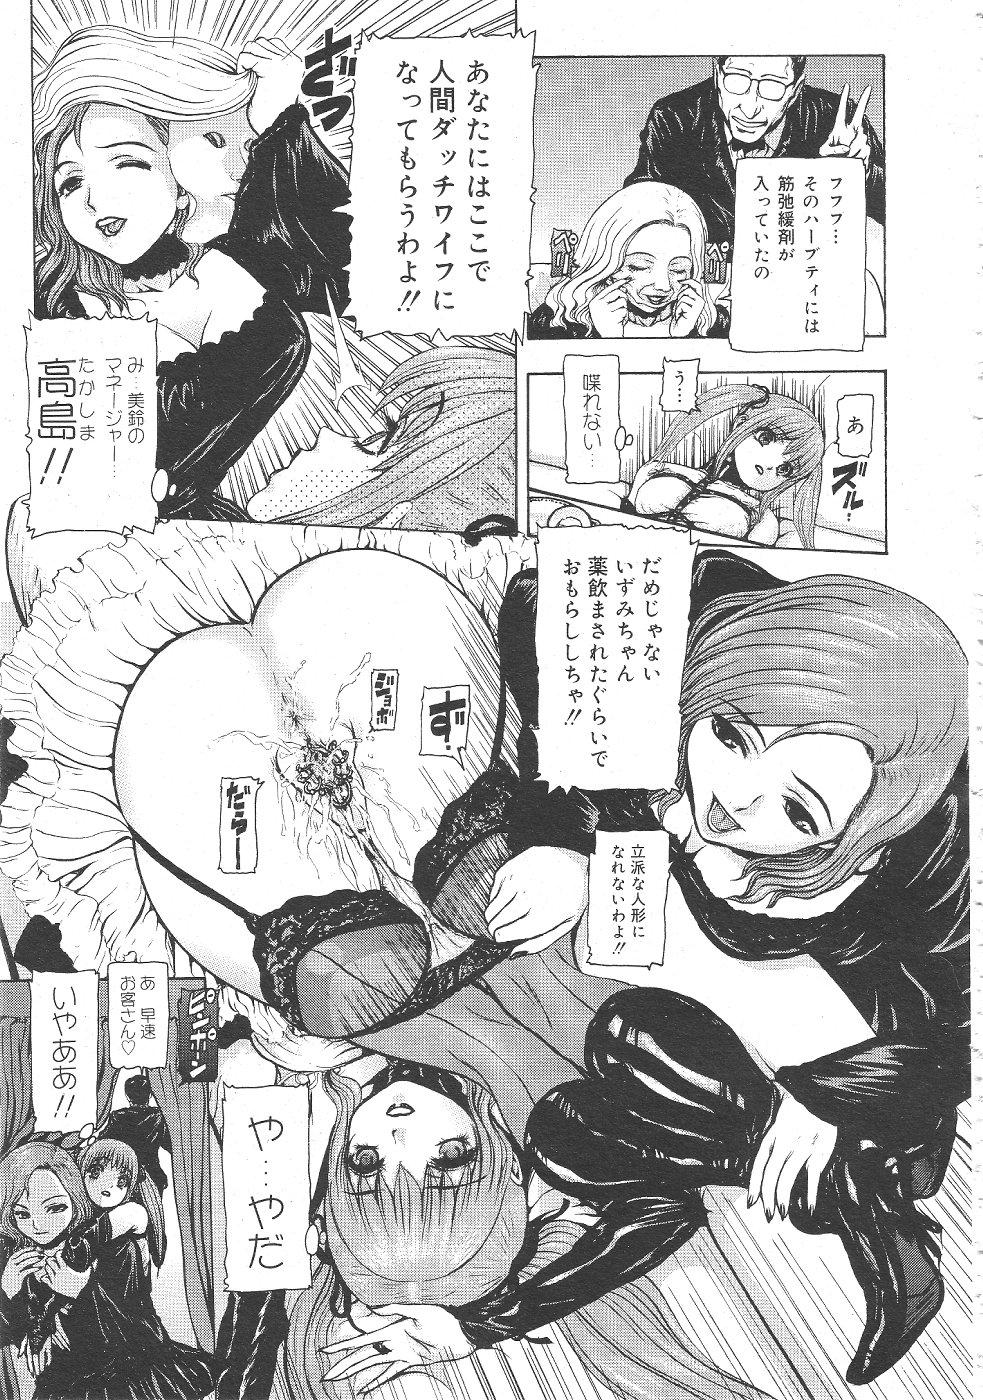 Gekkan Comic Muga 2004-06 Vol.10 156